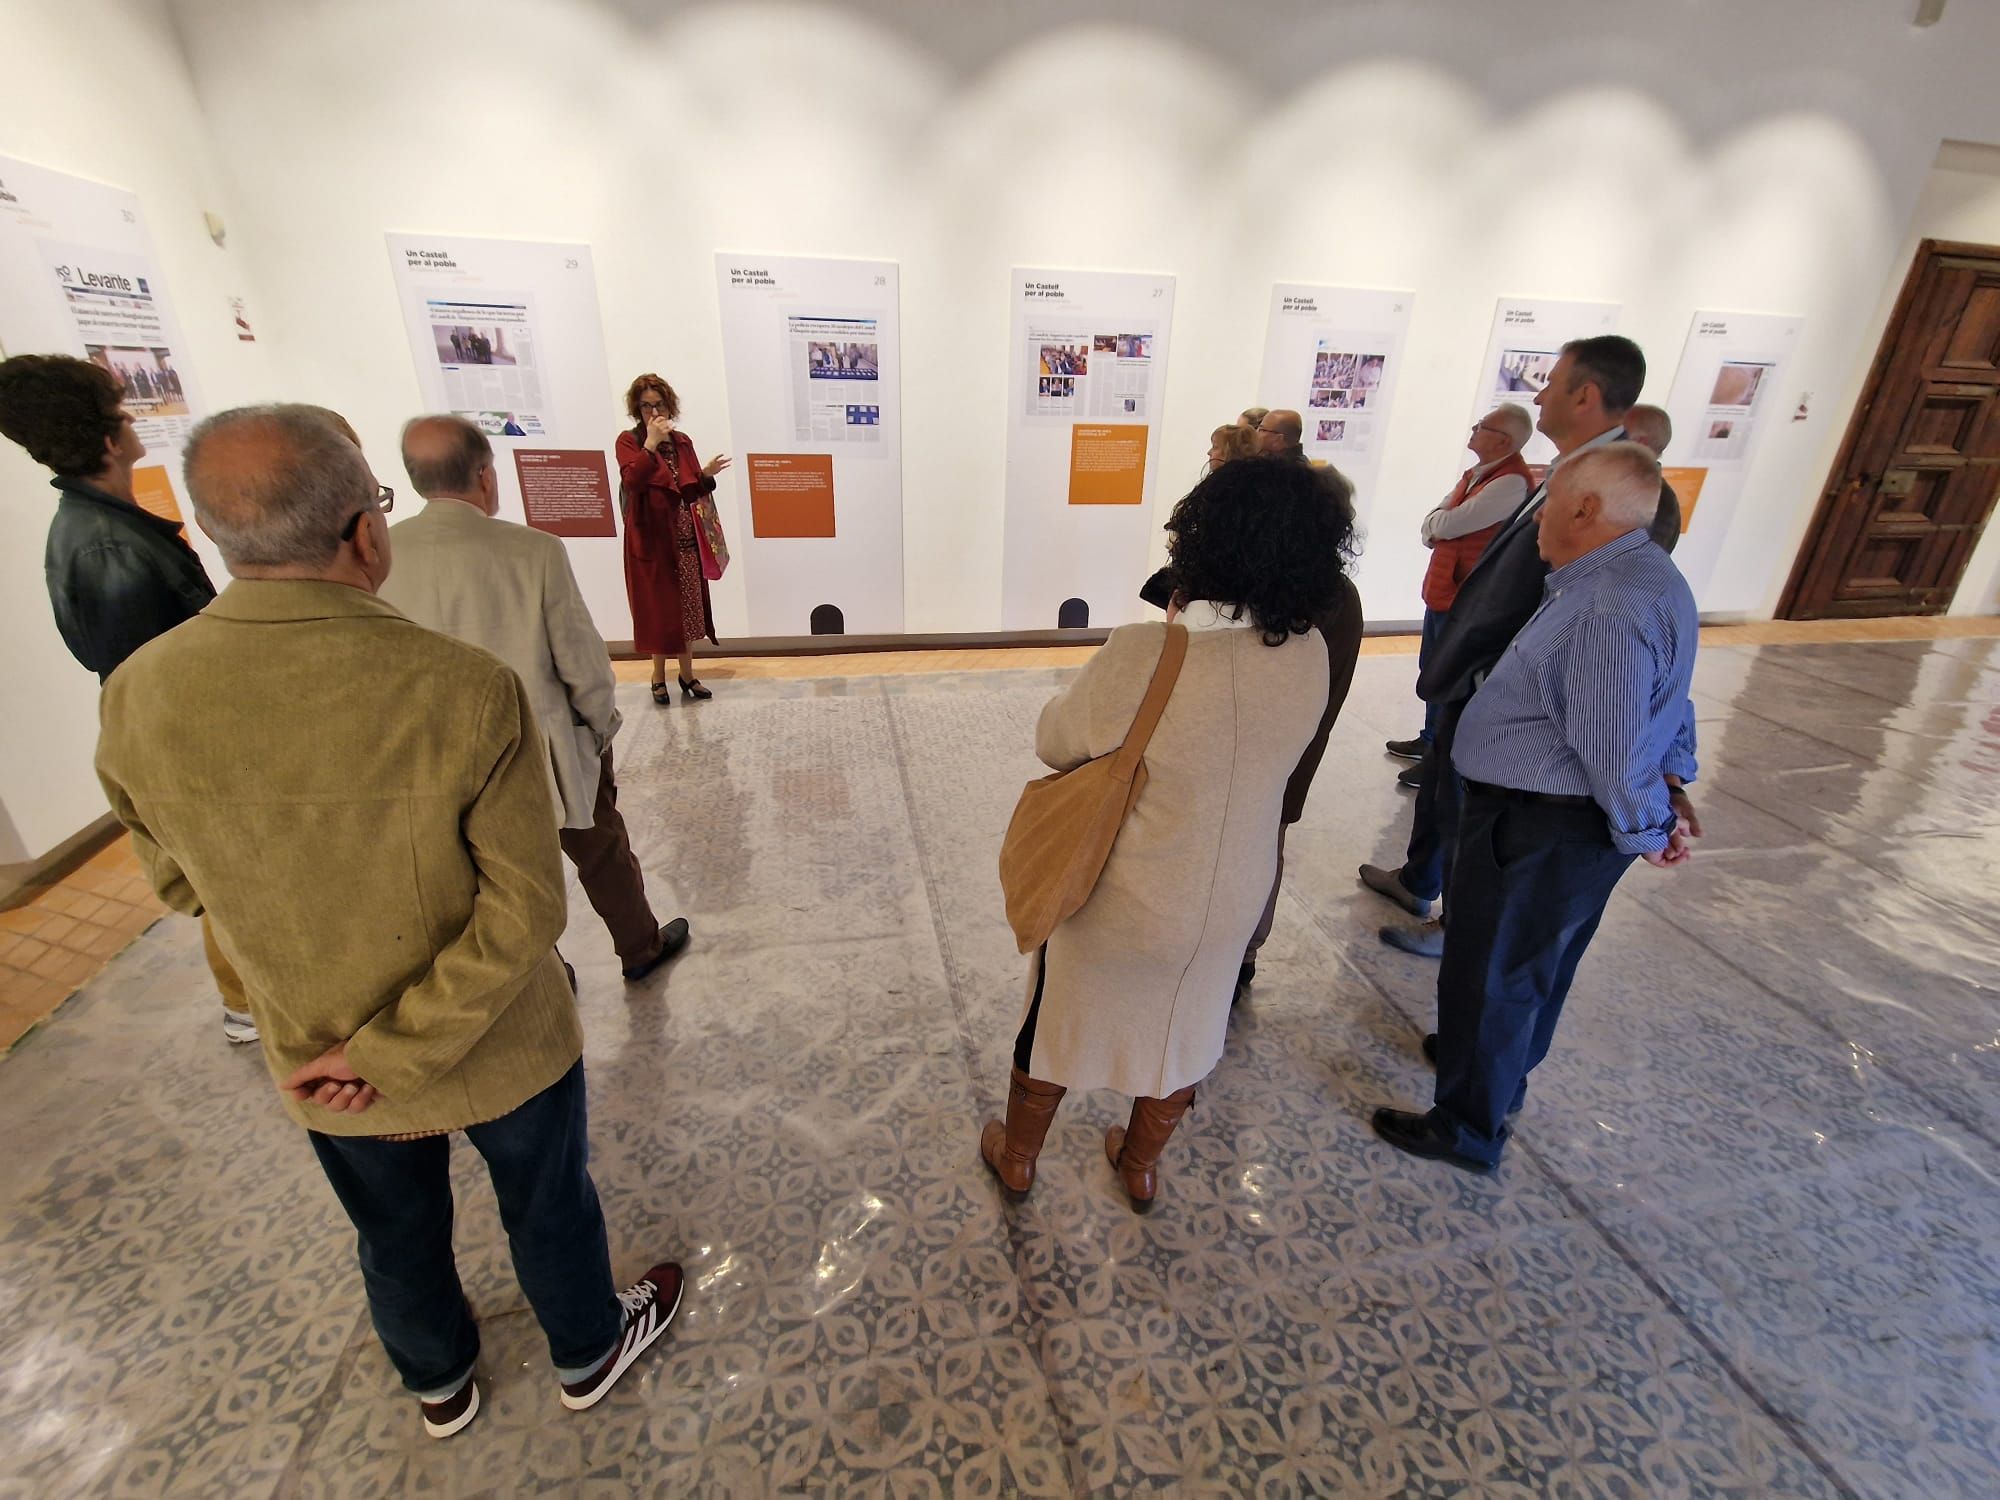 Visita a la exposición "Un Castell per al Poble en notícies de Laura Sena".